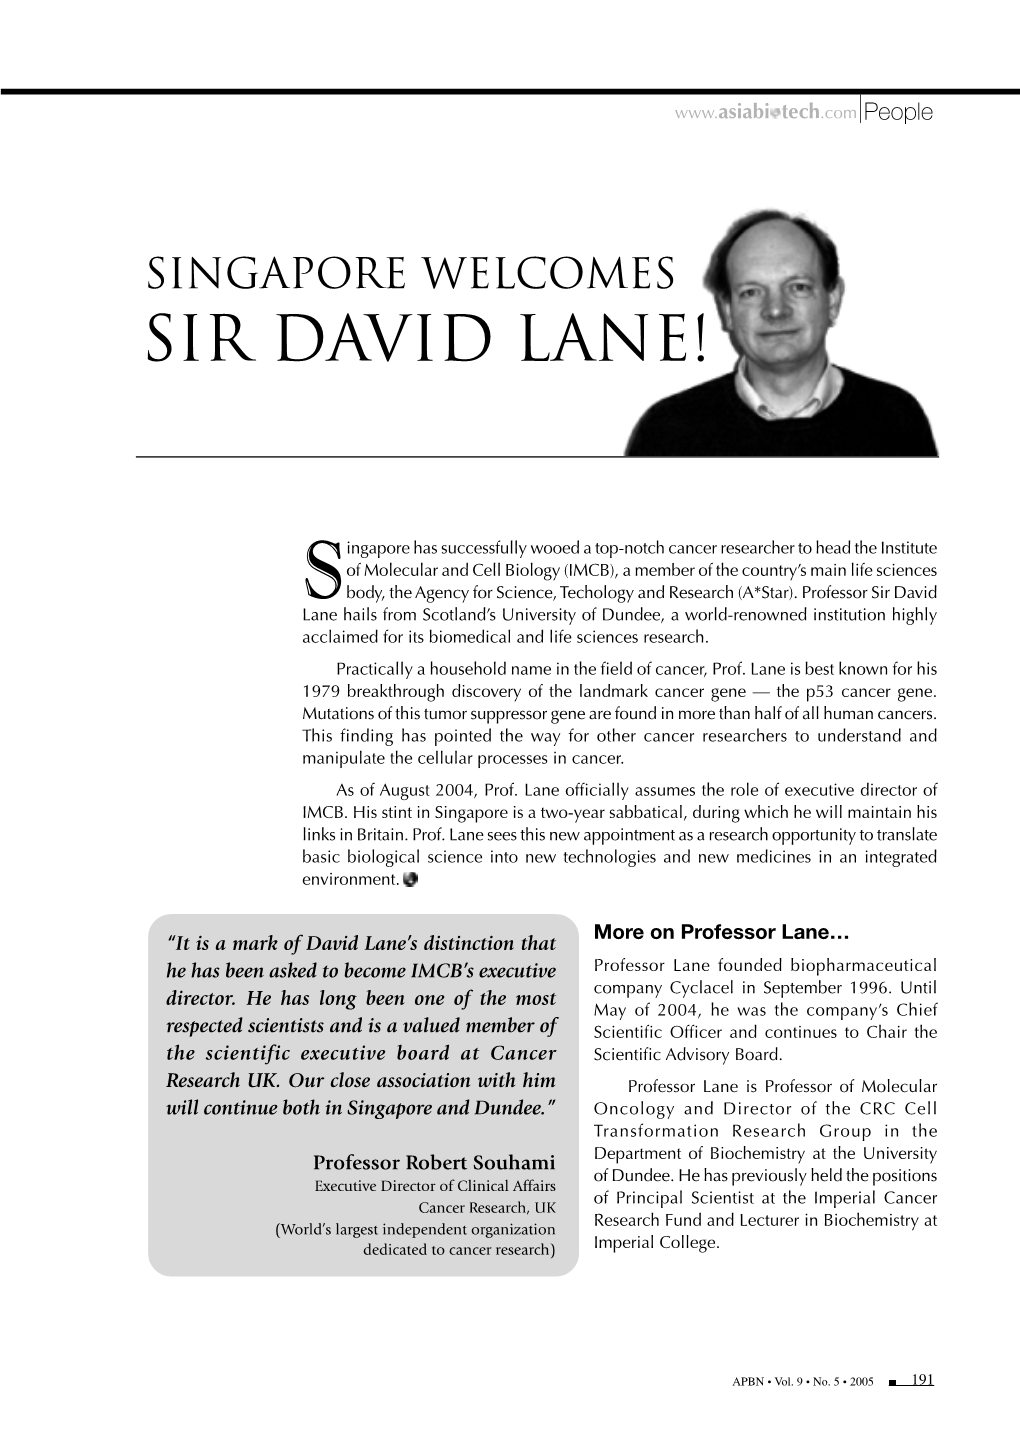 Singapore Welcomes Sir David Lane!